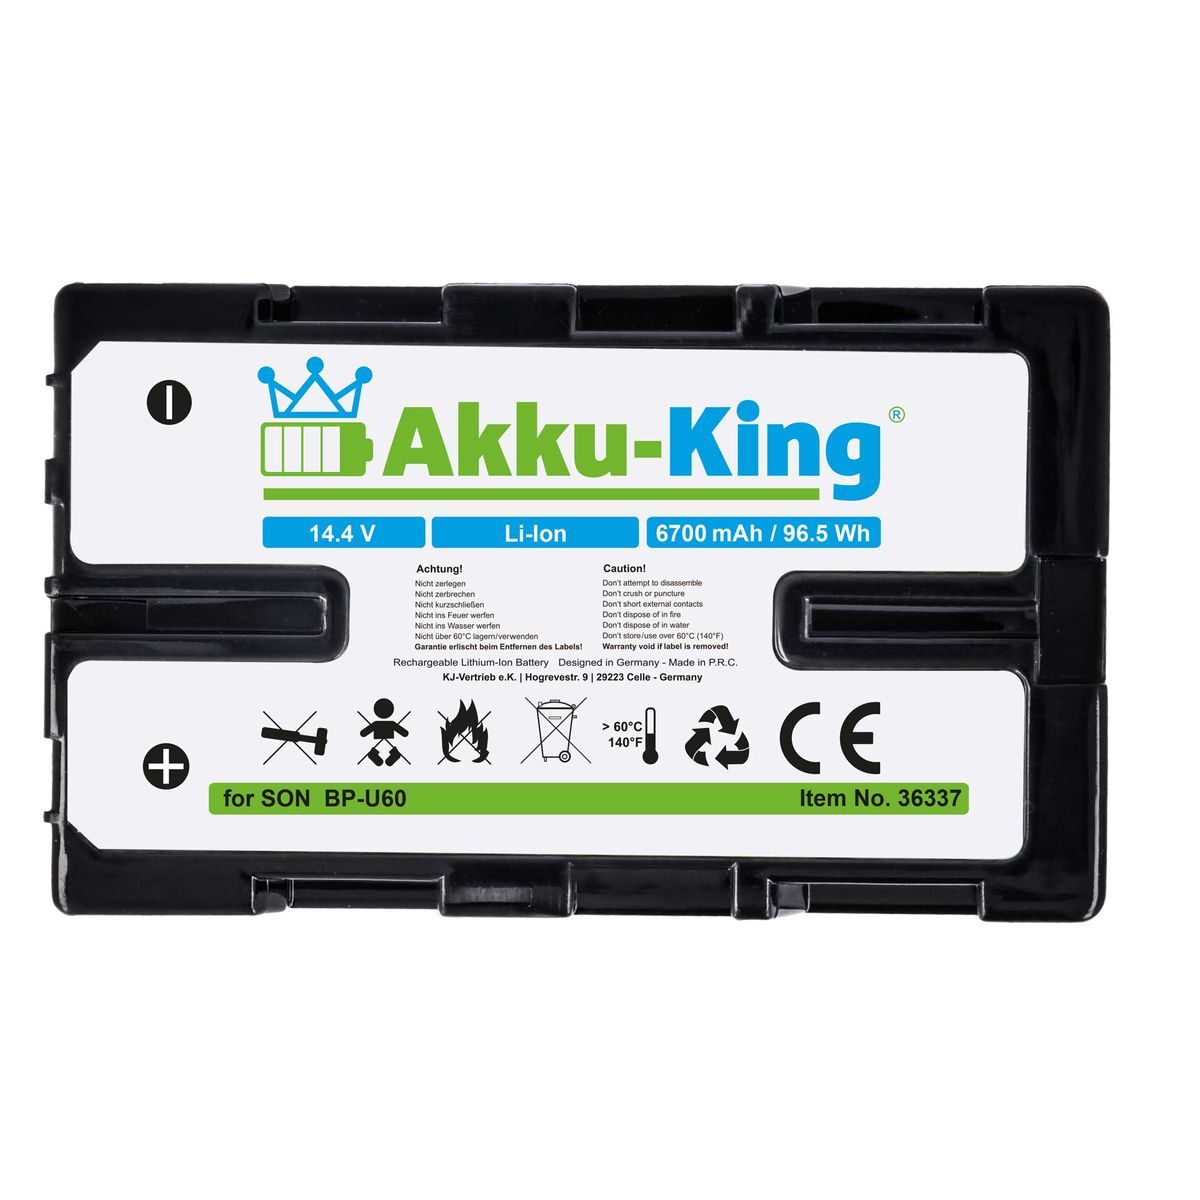 AKKU-KING Akku kompatibel 14.4 mit Volt, Kamera-Akku, 6700mAh BP-U60 Li-Ion Sony